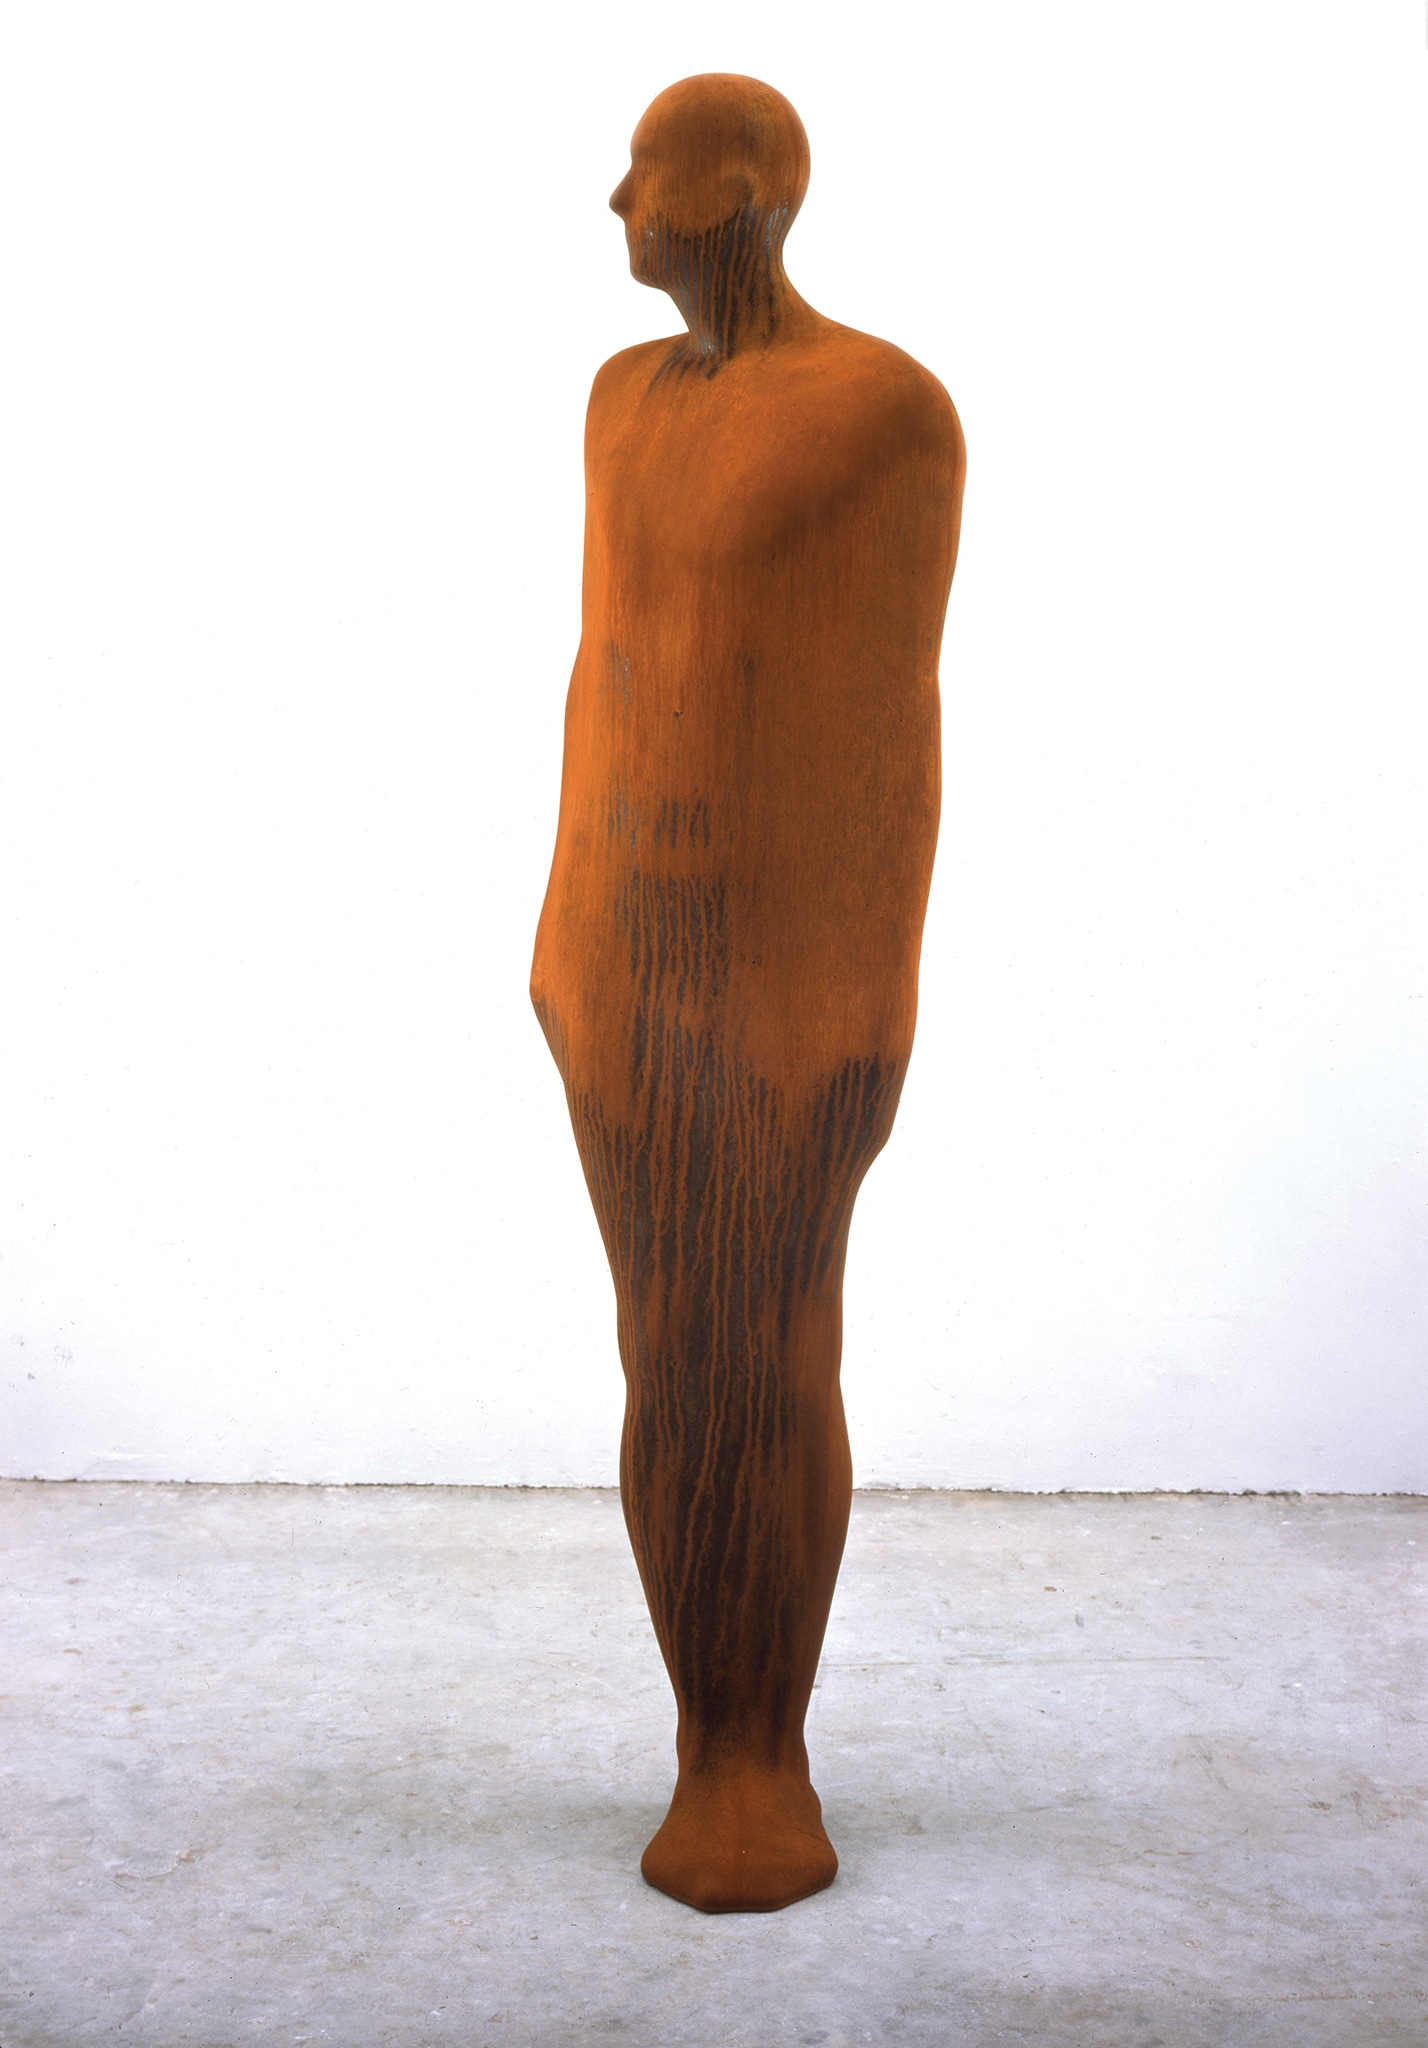 Antony Gormley - Here and there, 2002 - ghisa, cm 225 x 81 x 75 - GAM - Galleria Civica d'Arte Moderna e Contemporanea, Torino 